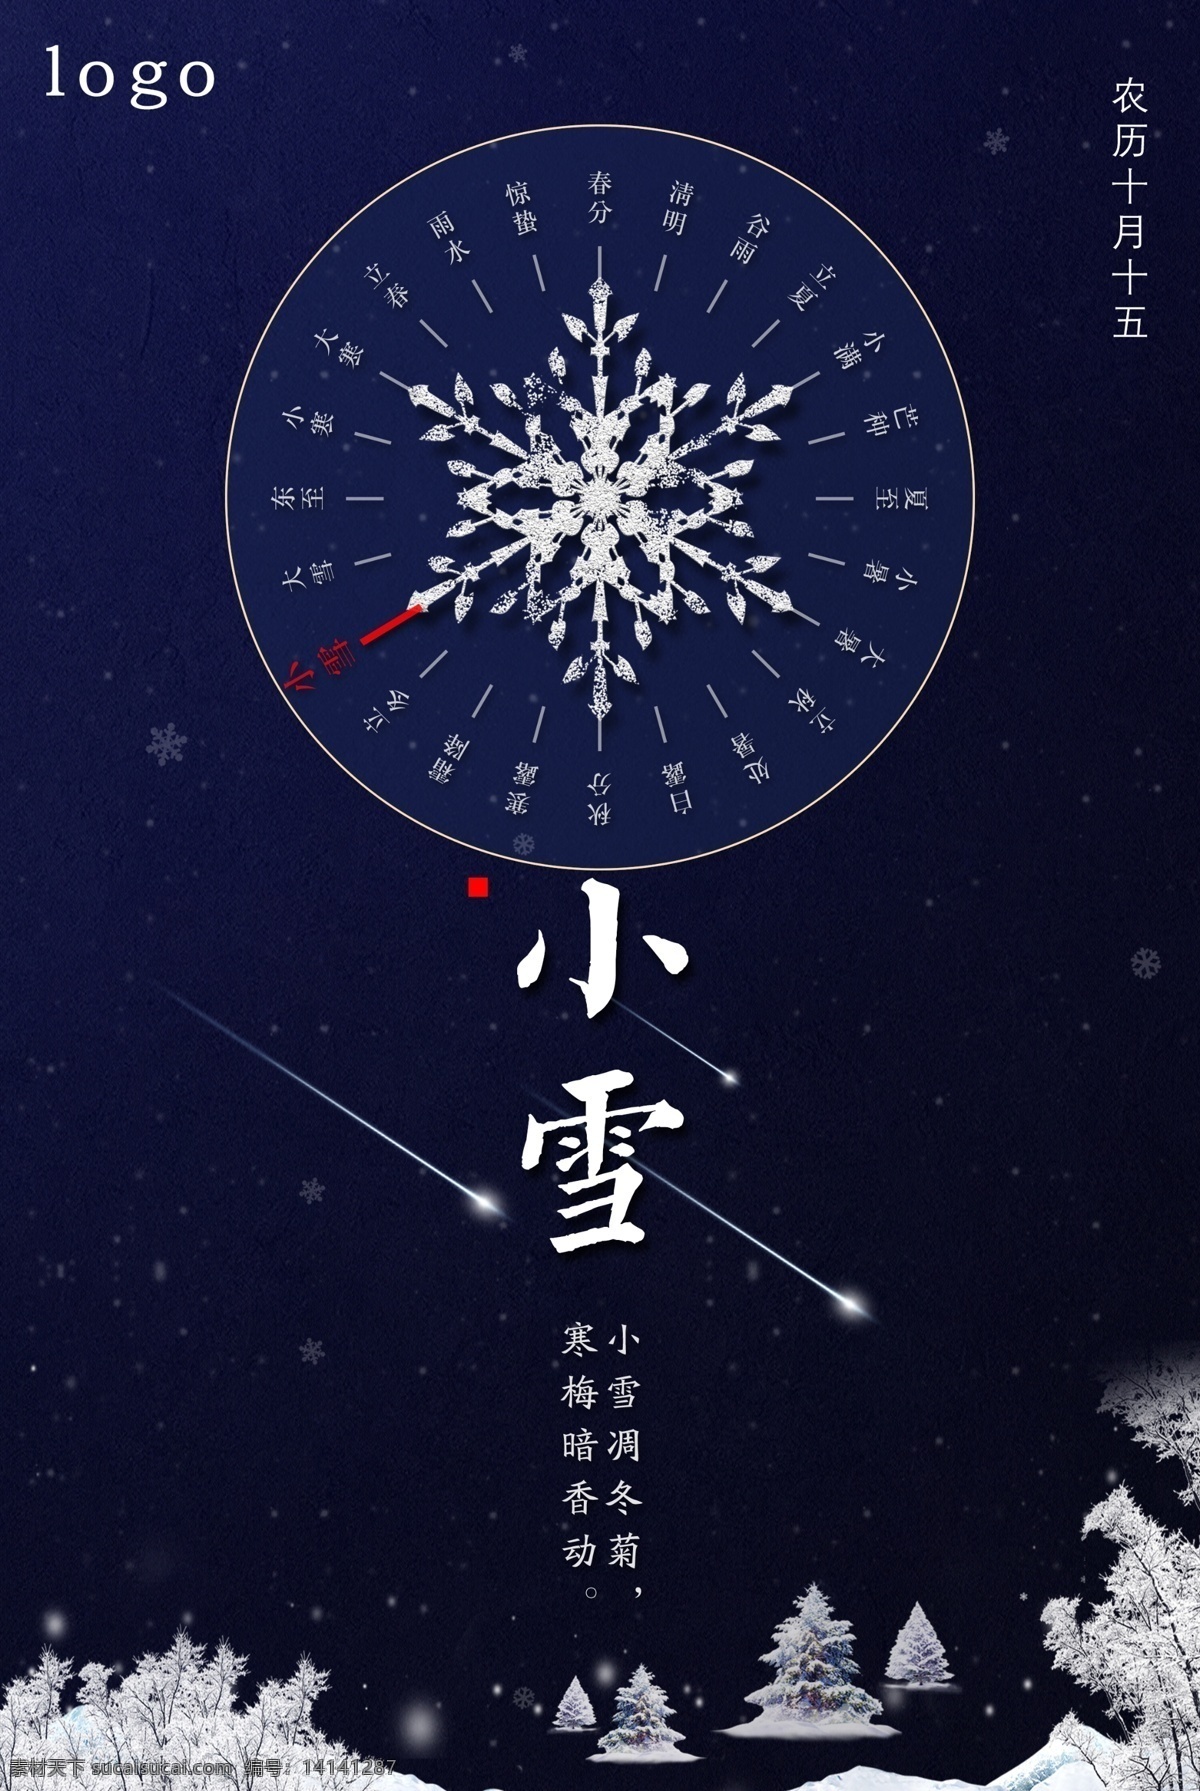 二十四节气 小雪 雪花 松树 宣传 海报 展板 暗色 流星光